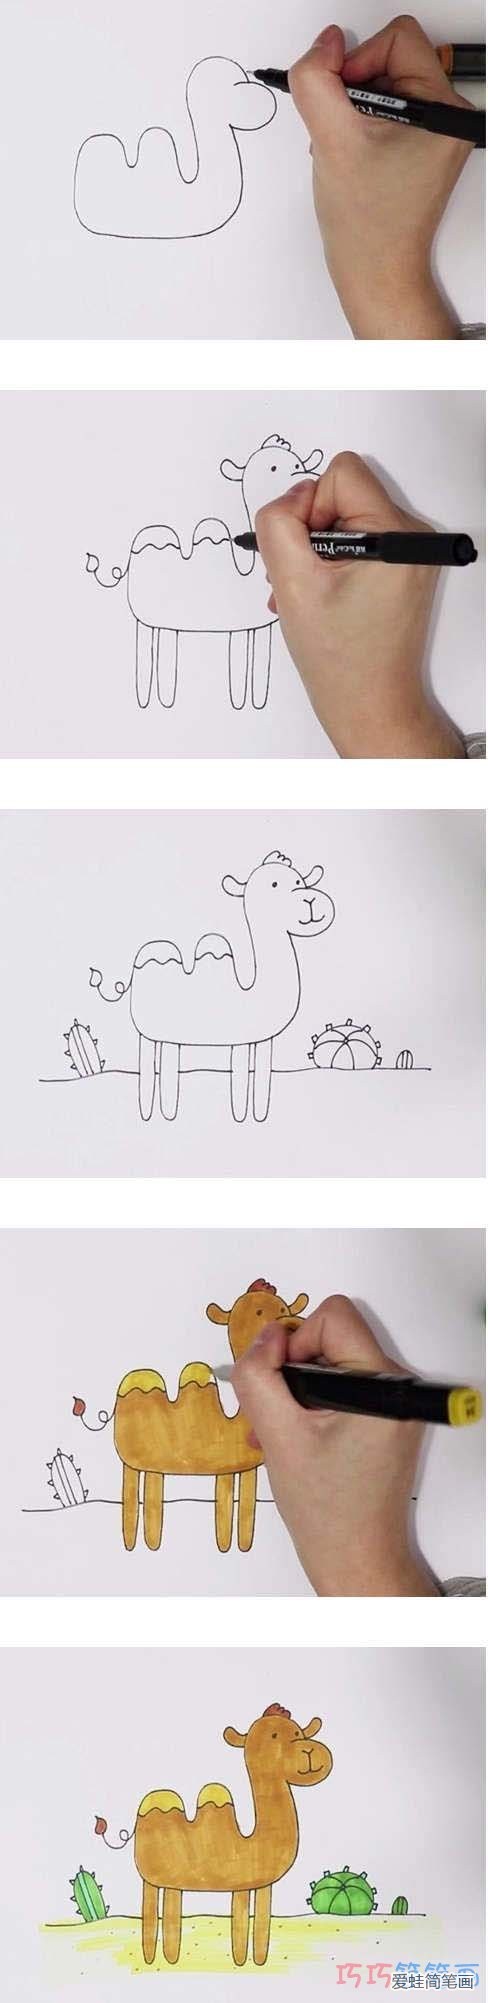 骆驼画法简笔画图片